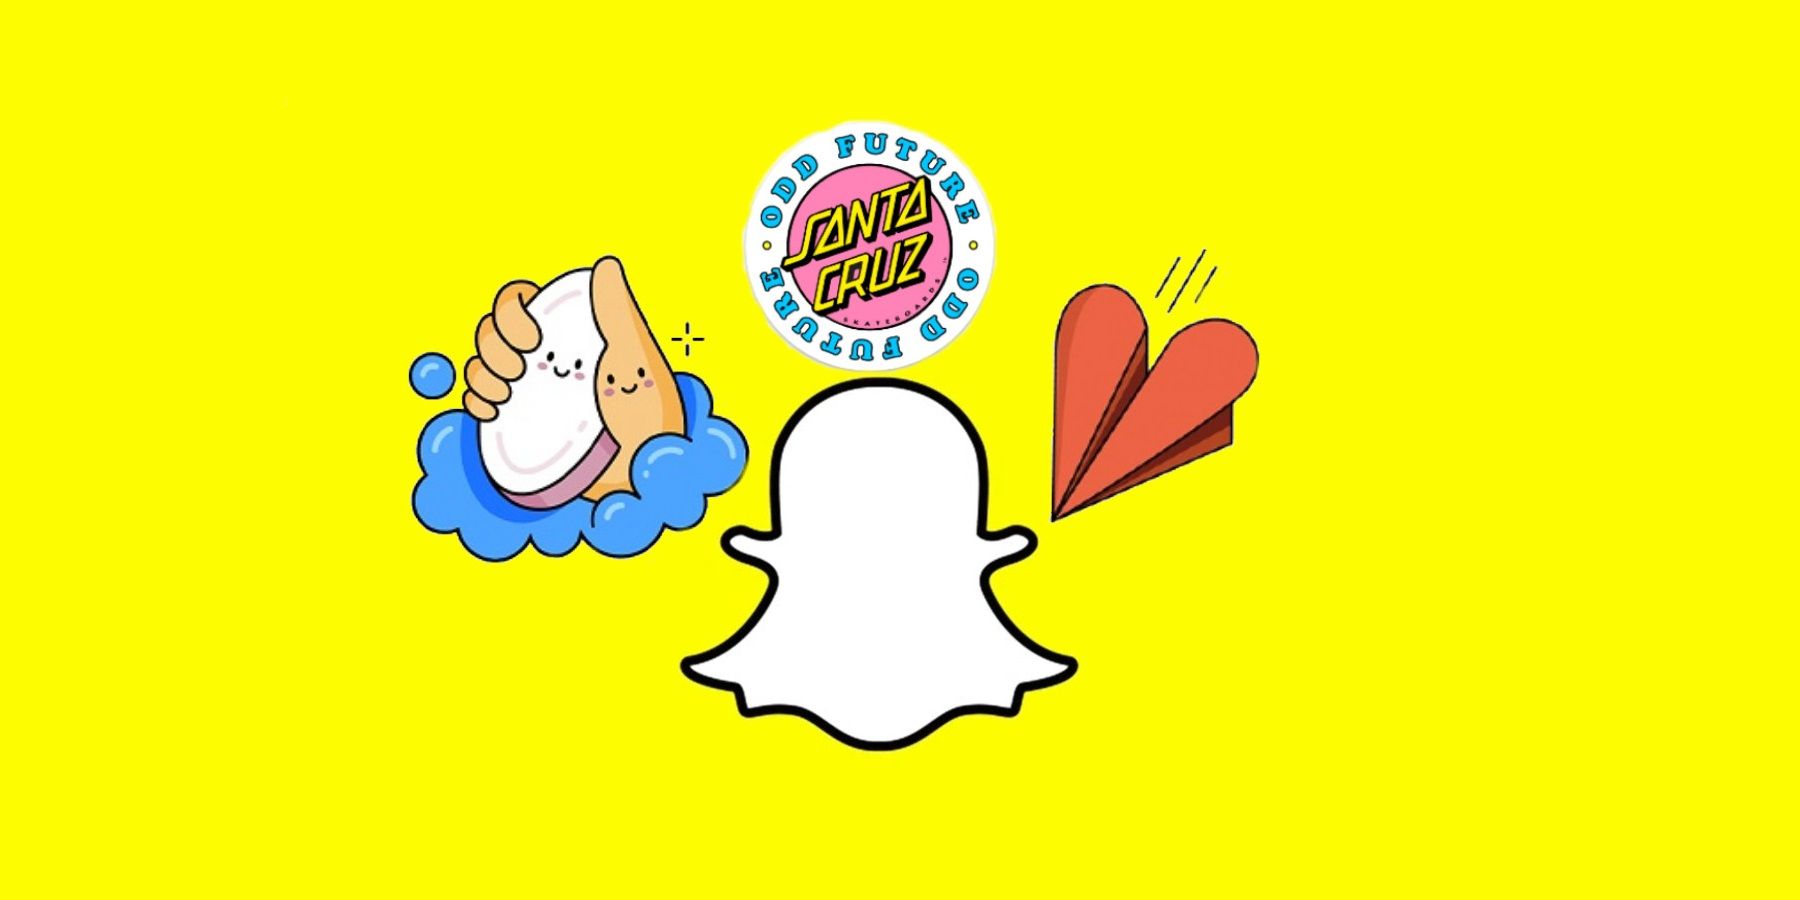 Fauteuil maatschappij De waarheid vertellen Snapchat: How To Add Stickers To A Snap & Make Your Own Stickers